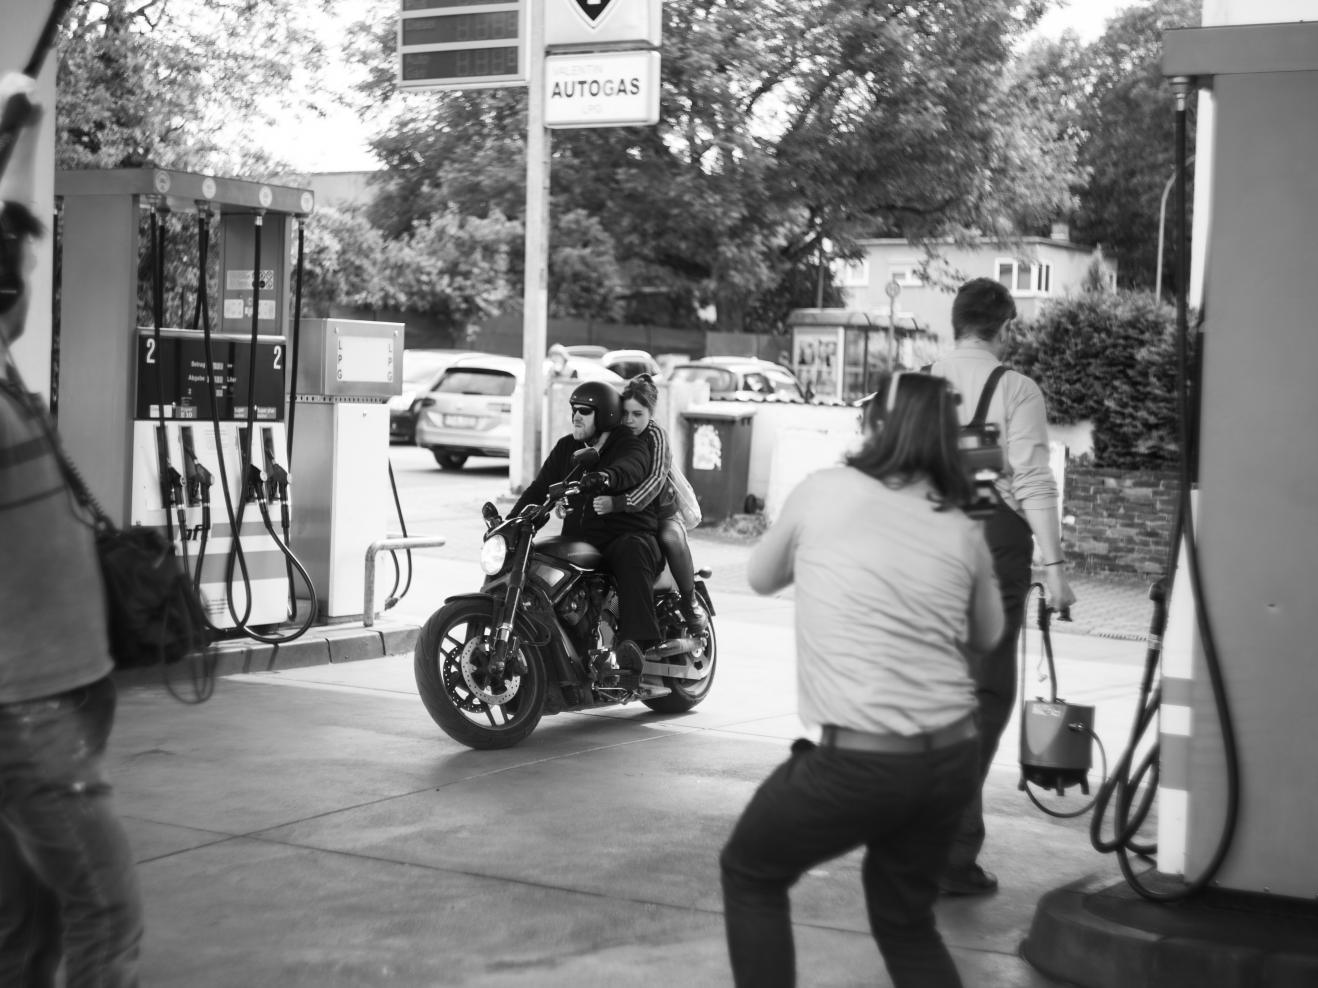 Zwei Personen fahren auf einem Motorrad in eine Tankstelle und werden dabei gefilmt.